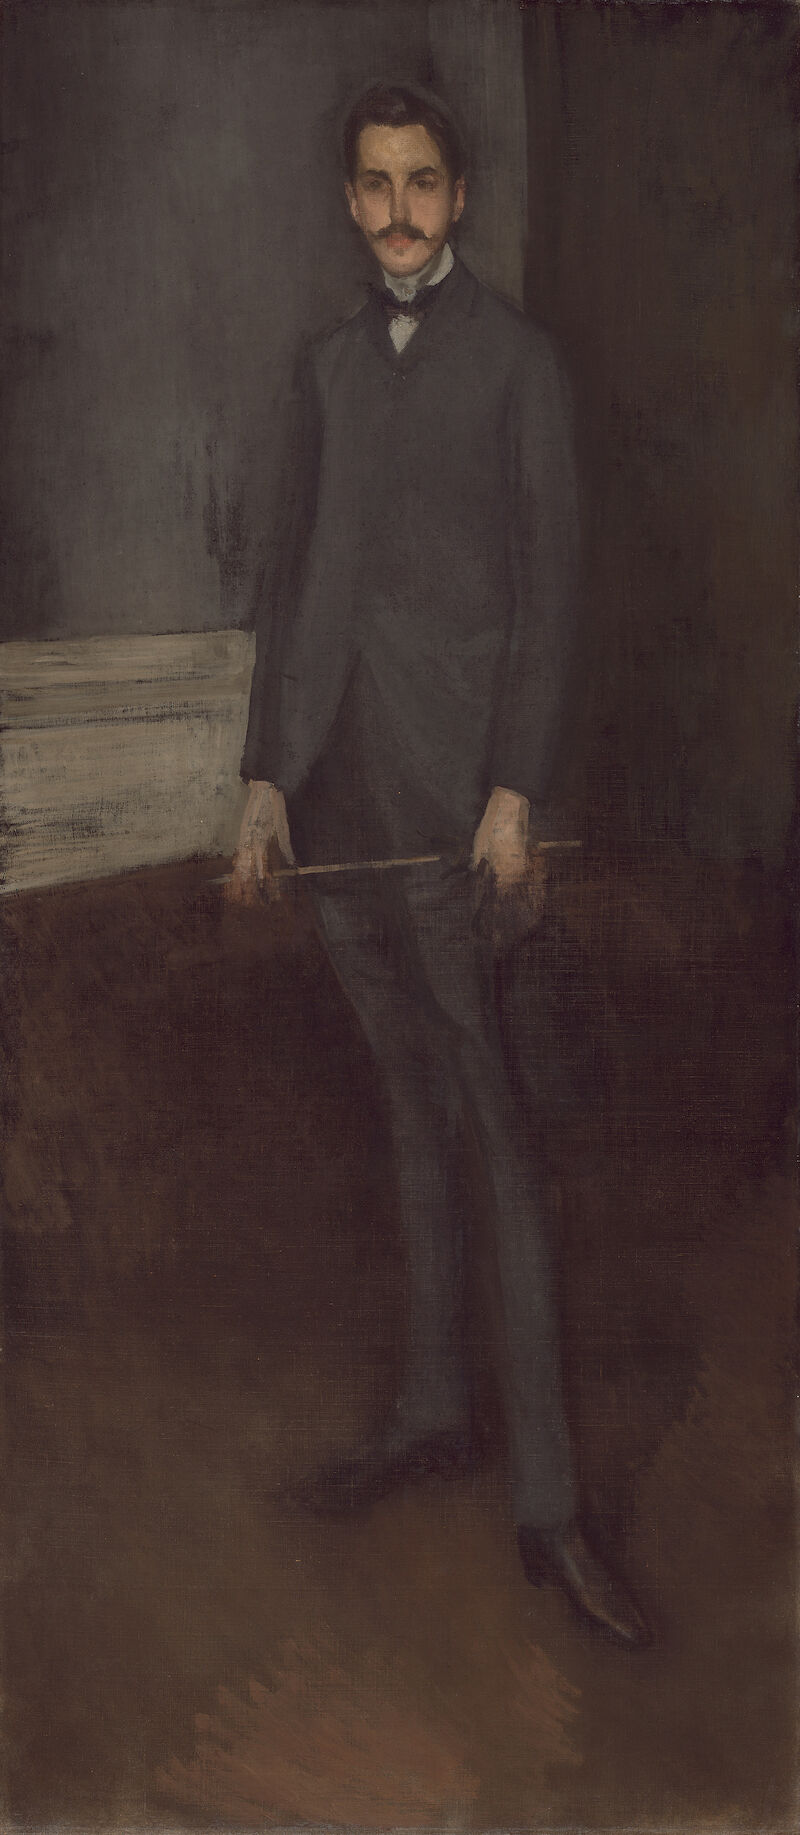 Portrait of George W. Vanderbilt scale comparison